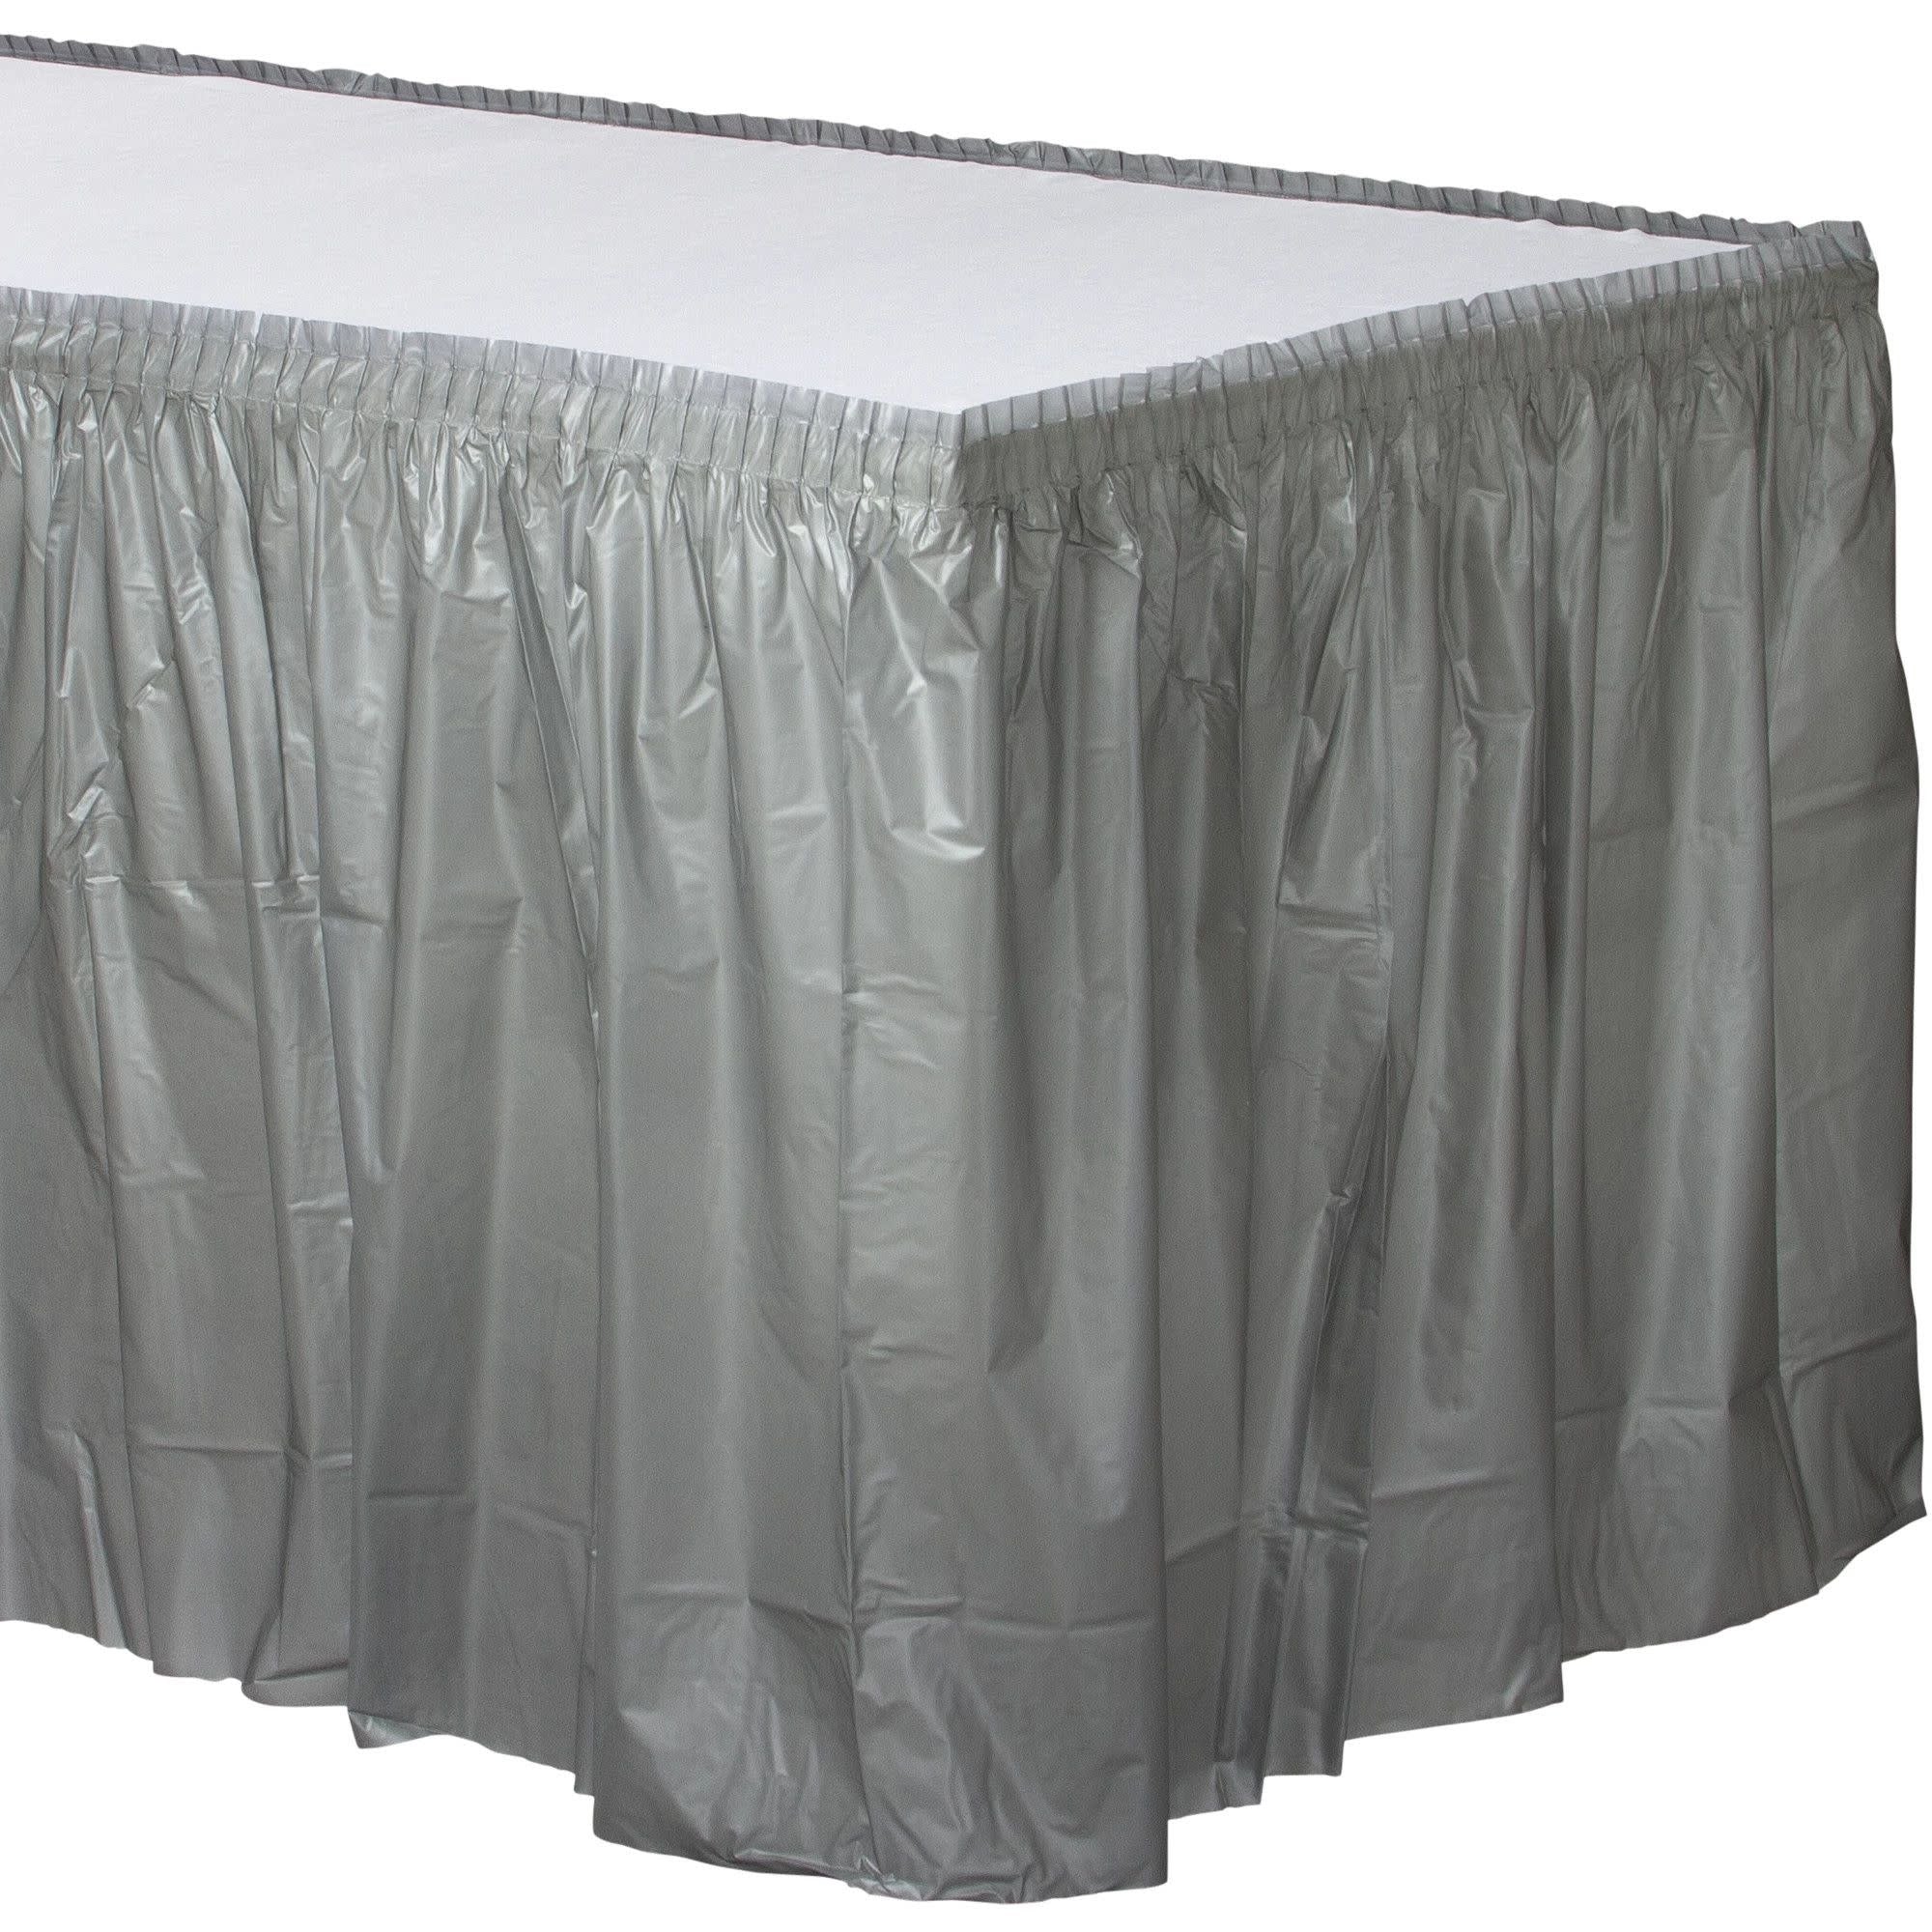 Silver Plastic Table Skirt 21ft x 73.66cm